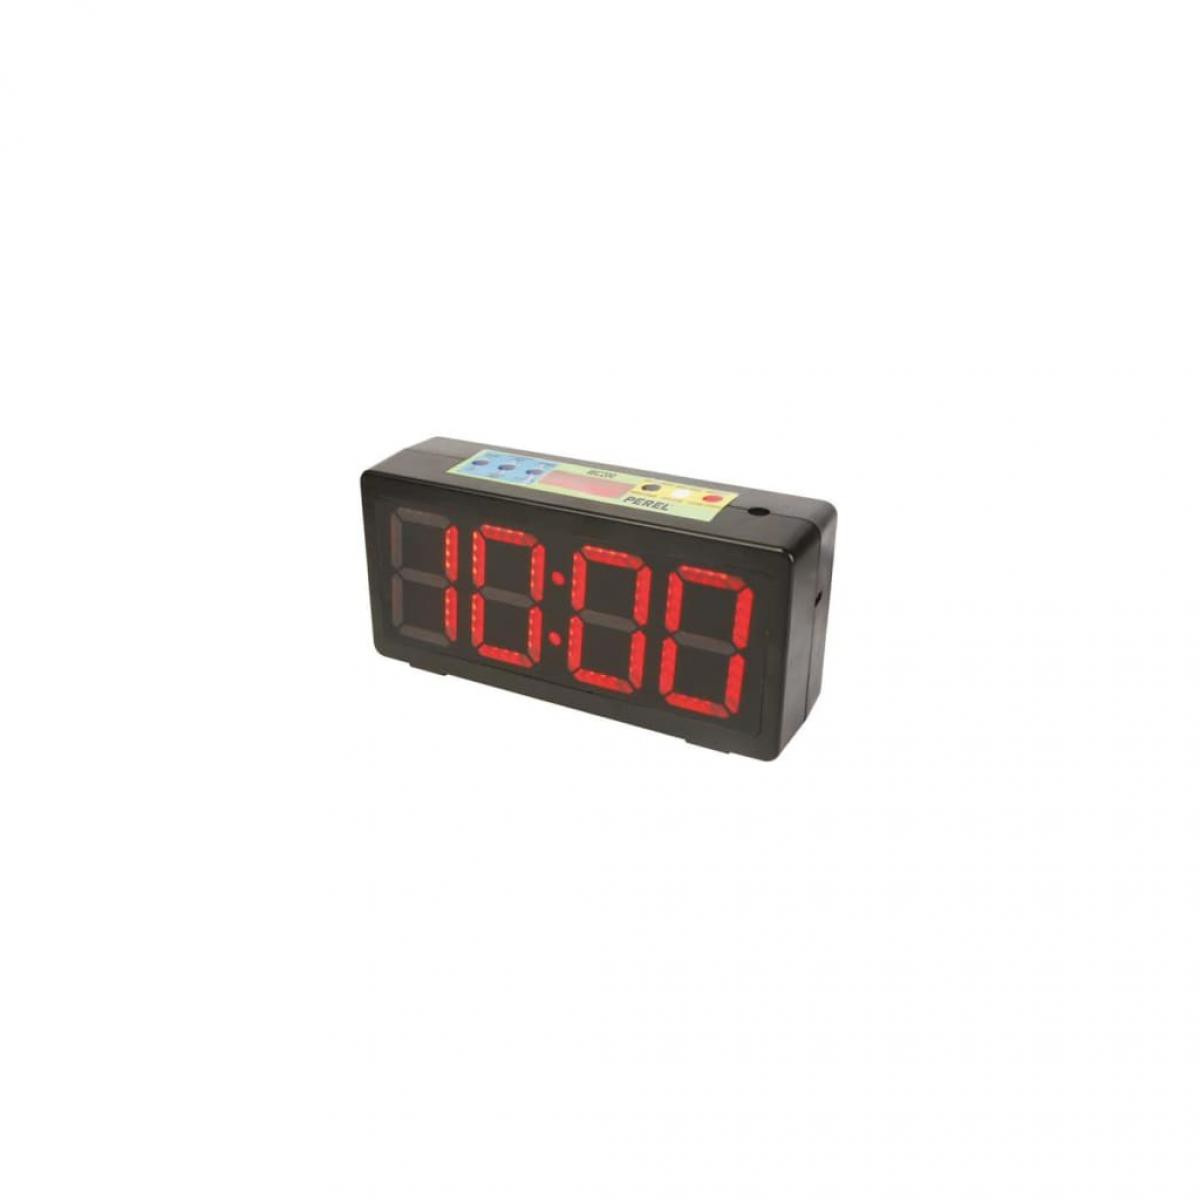 Perel - Perel Horloge avec chronometre/compte à rebours & minuterie d'intervalle - Fils et câbles électriques